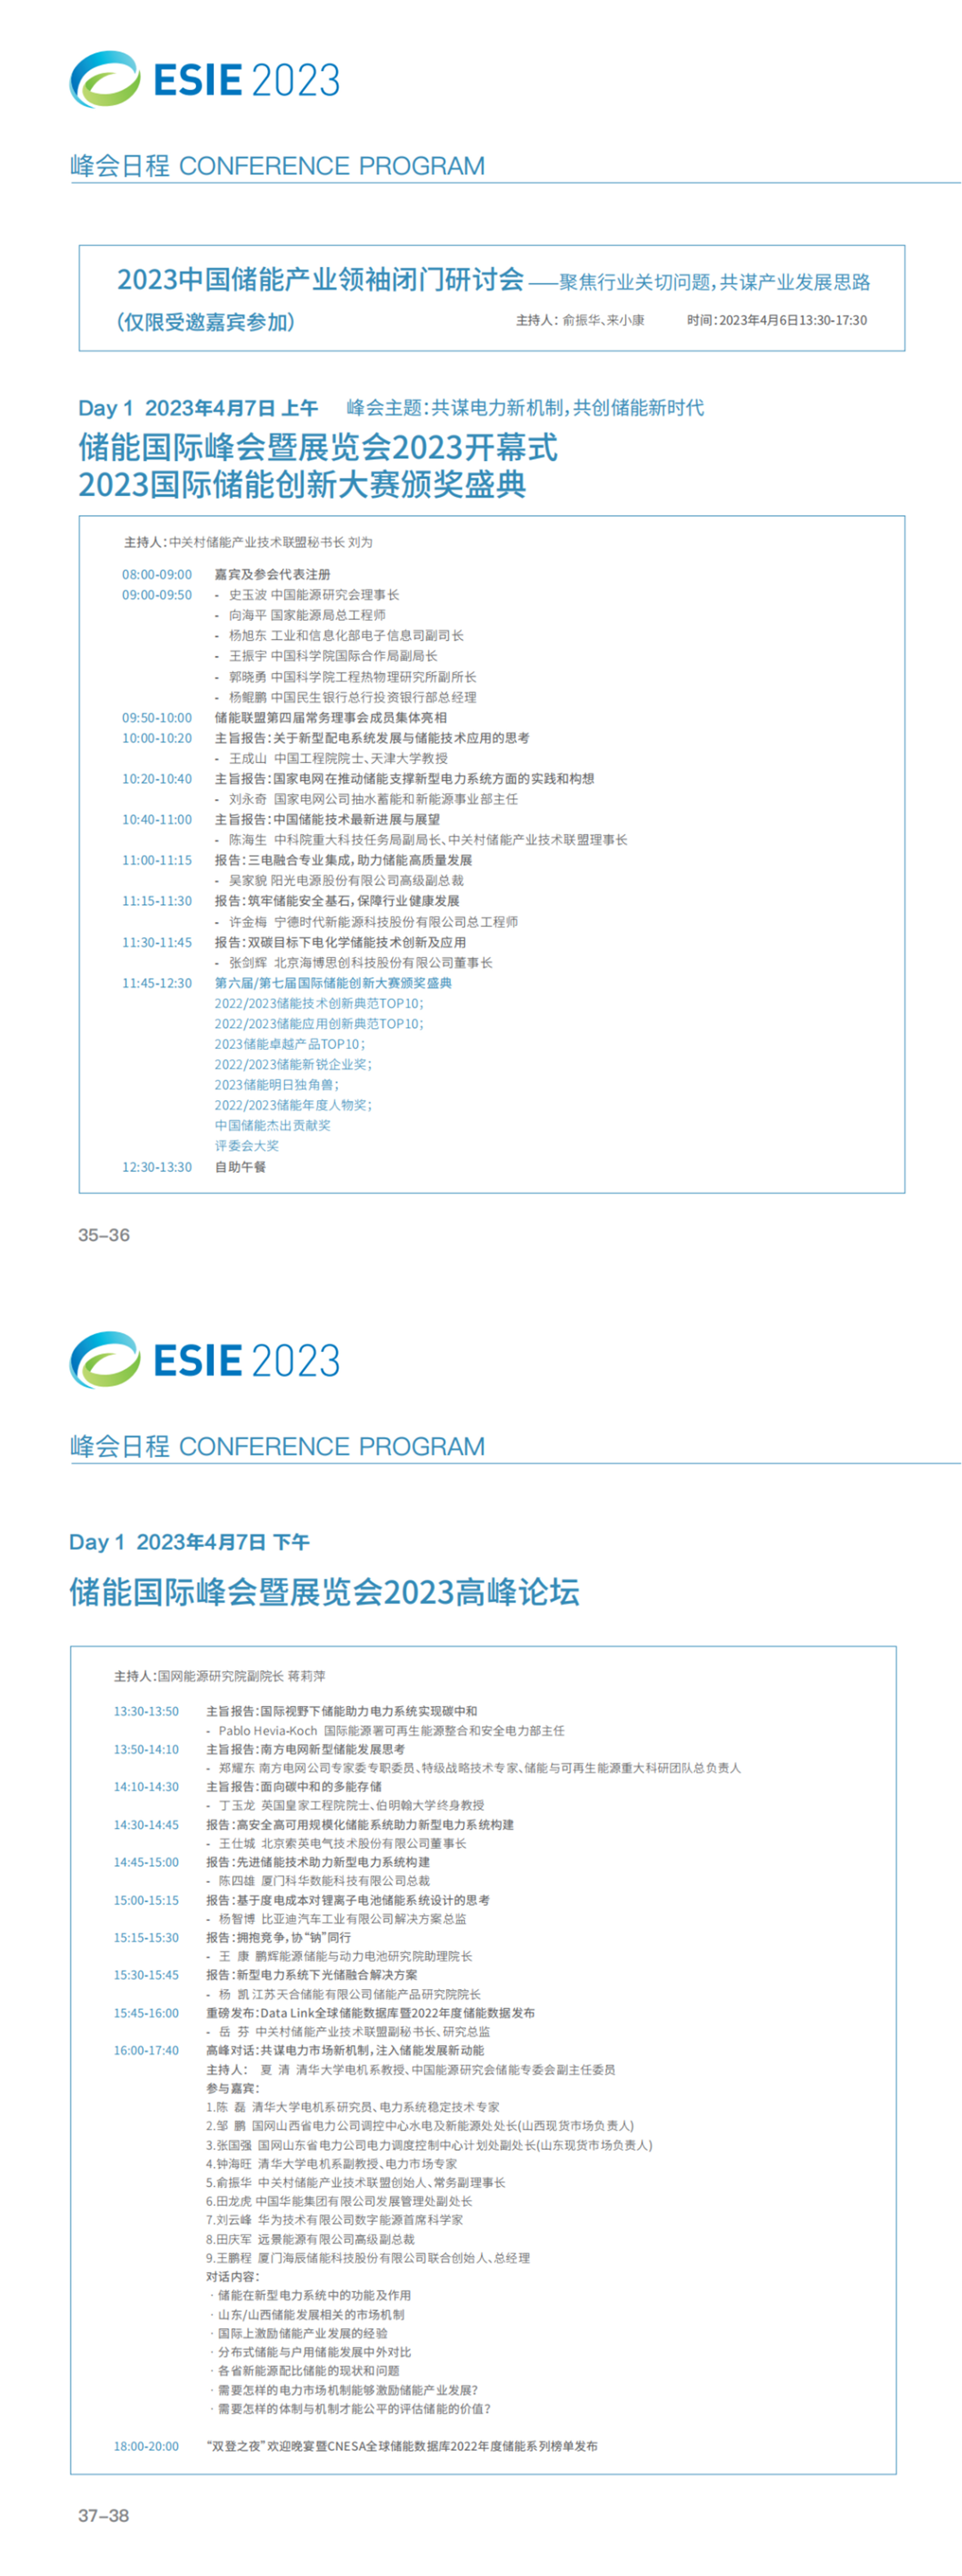 储能年度最强音 | ESIE2023开幕式+高峰对话+主题论坛日程发布